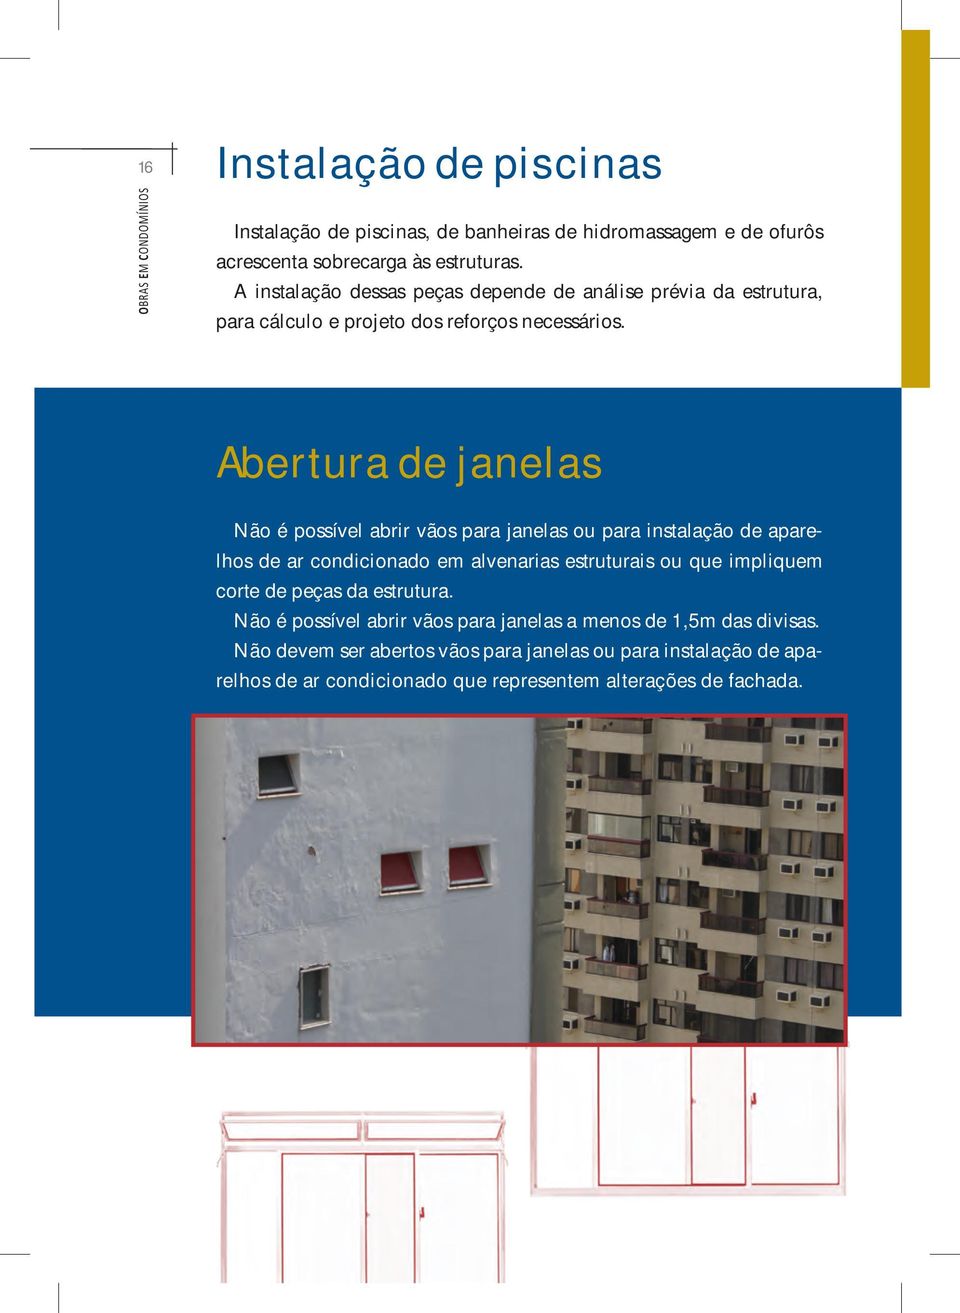 Abertura de janelas Não é possível abrir vãos para janelas ou para instalação de aparelhos de ar condicionado em alvenarias estruturais ou que impliquem